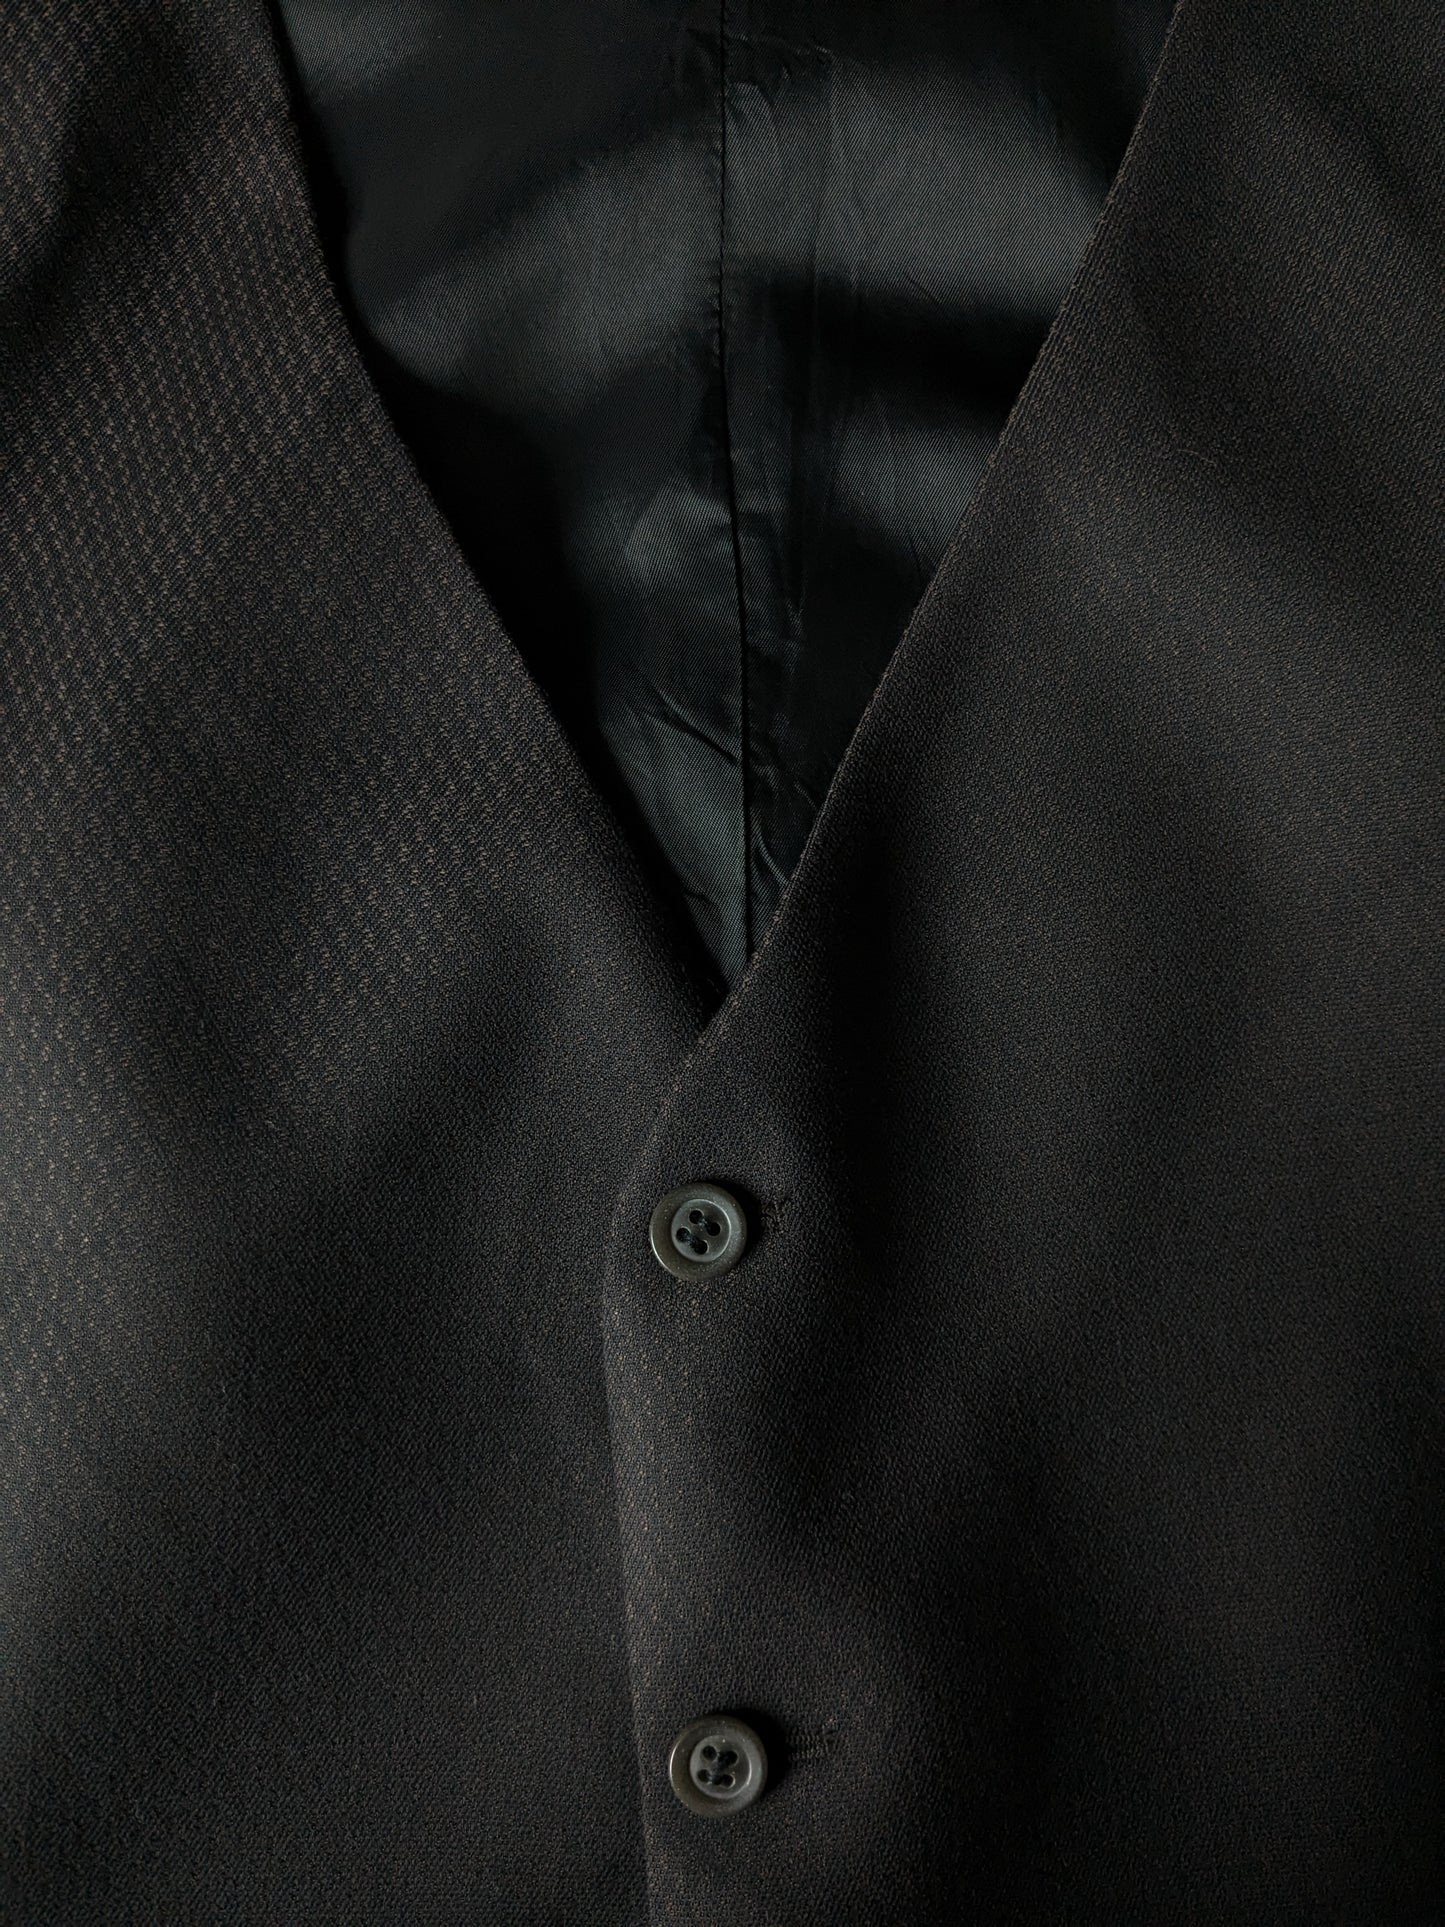 Gilet # 340. Motif noir marron avec une petite poche intérieure. Taille xl.